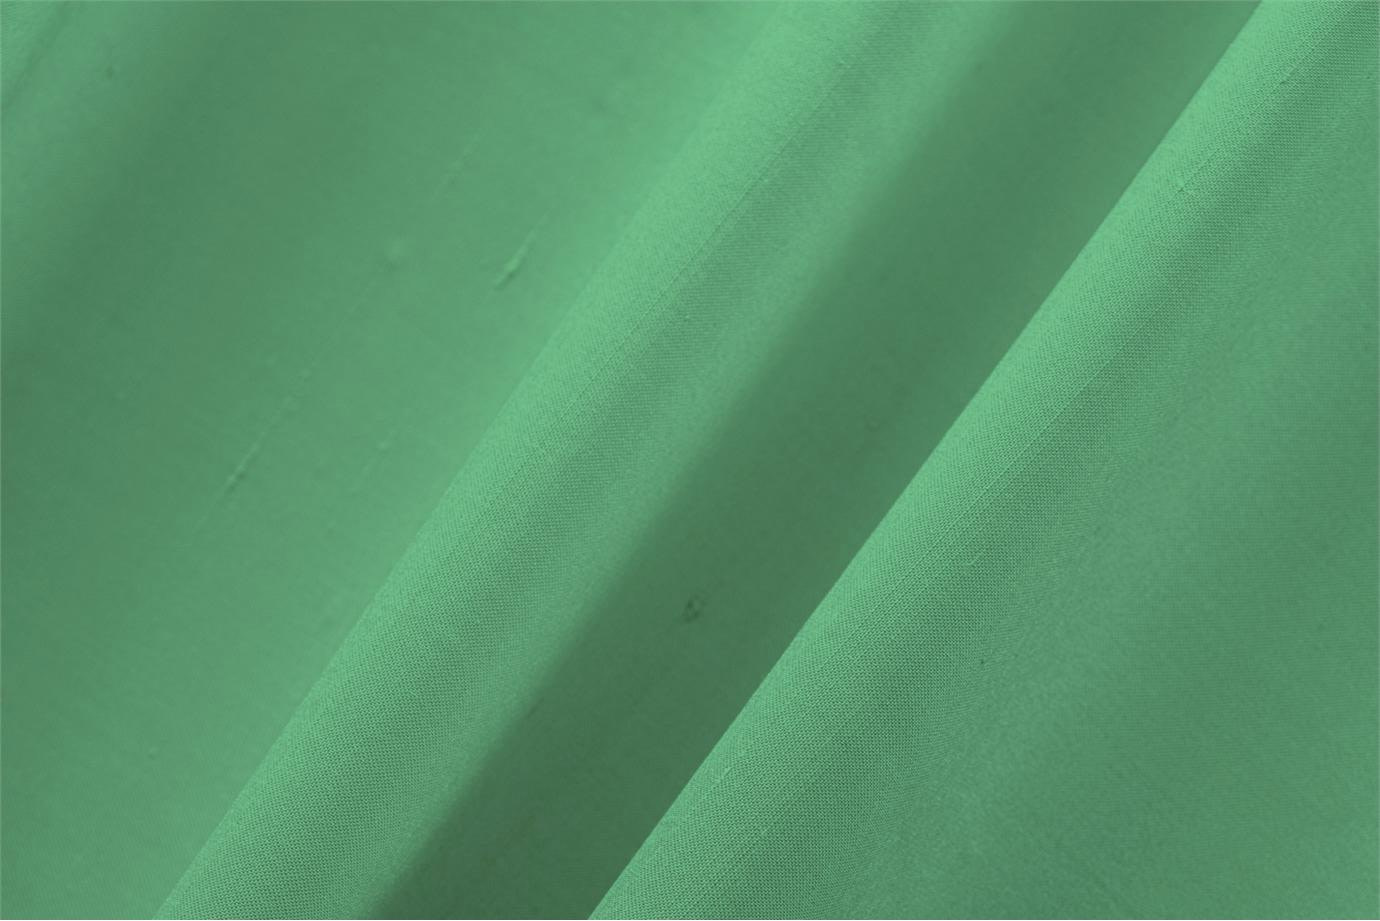 Tissu Double Shantung Vert fougère en Coton, Soie pour vêtements